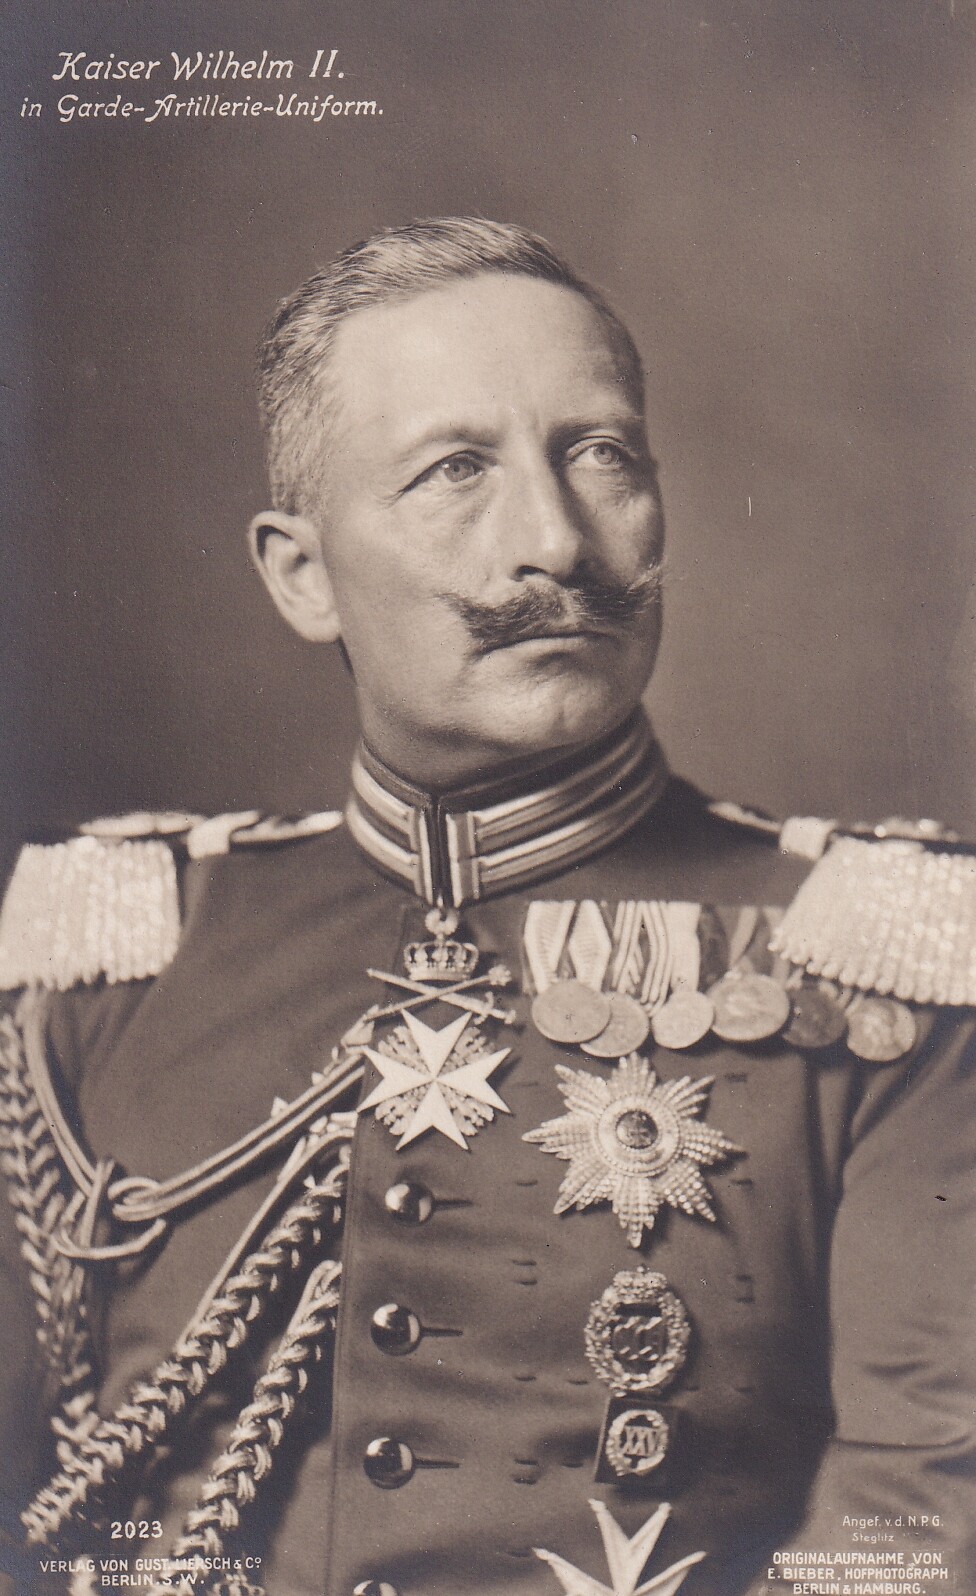 Bildpostkarte mit Foto des letzten deutschen Kaisers Wilhelm II. (1859-1941) in Garde-Artillerie-Uniform, 1908. (Schloß Wernigerode GmbH RR-F)